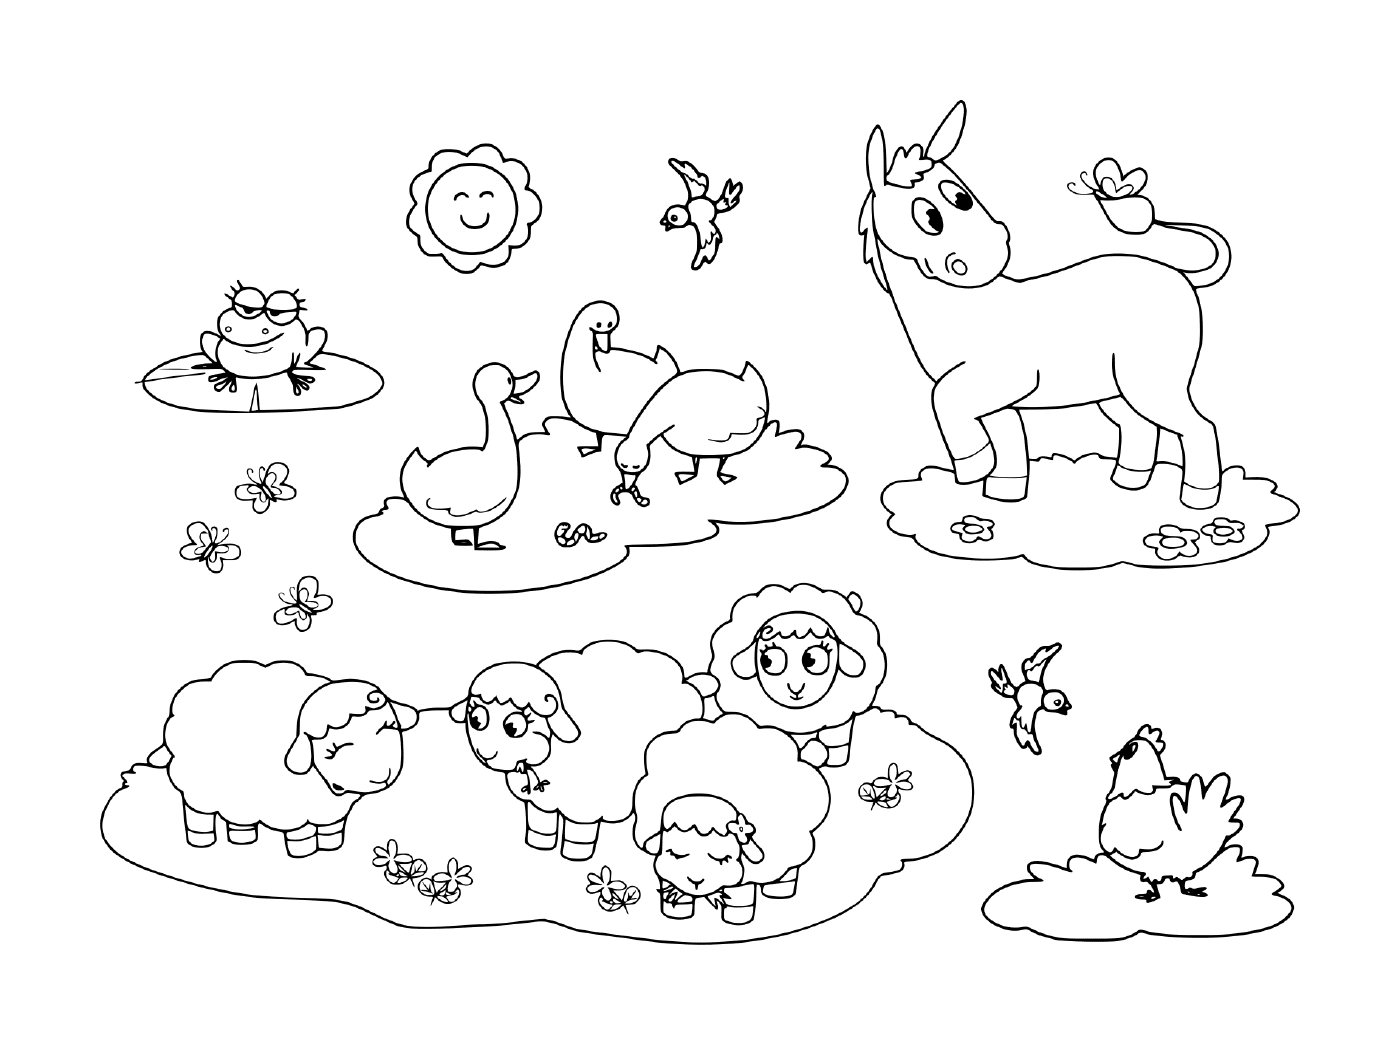   un groupe d'animaux dans l'herbe, comprenant un âne, une oie, une poule, des moutons et une grenouille 